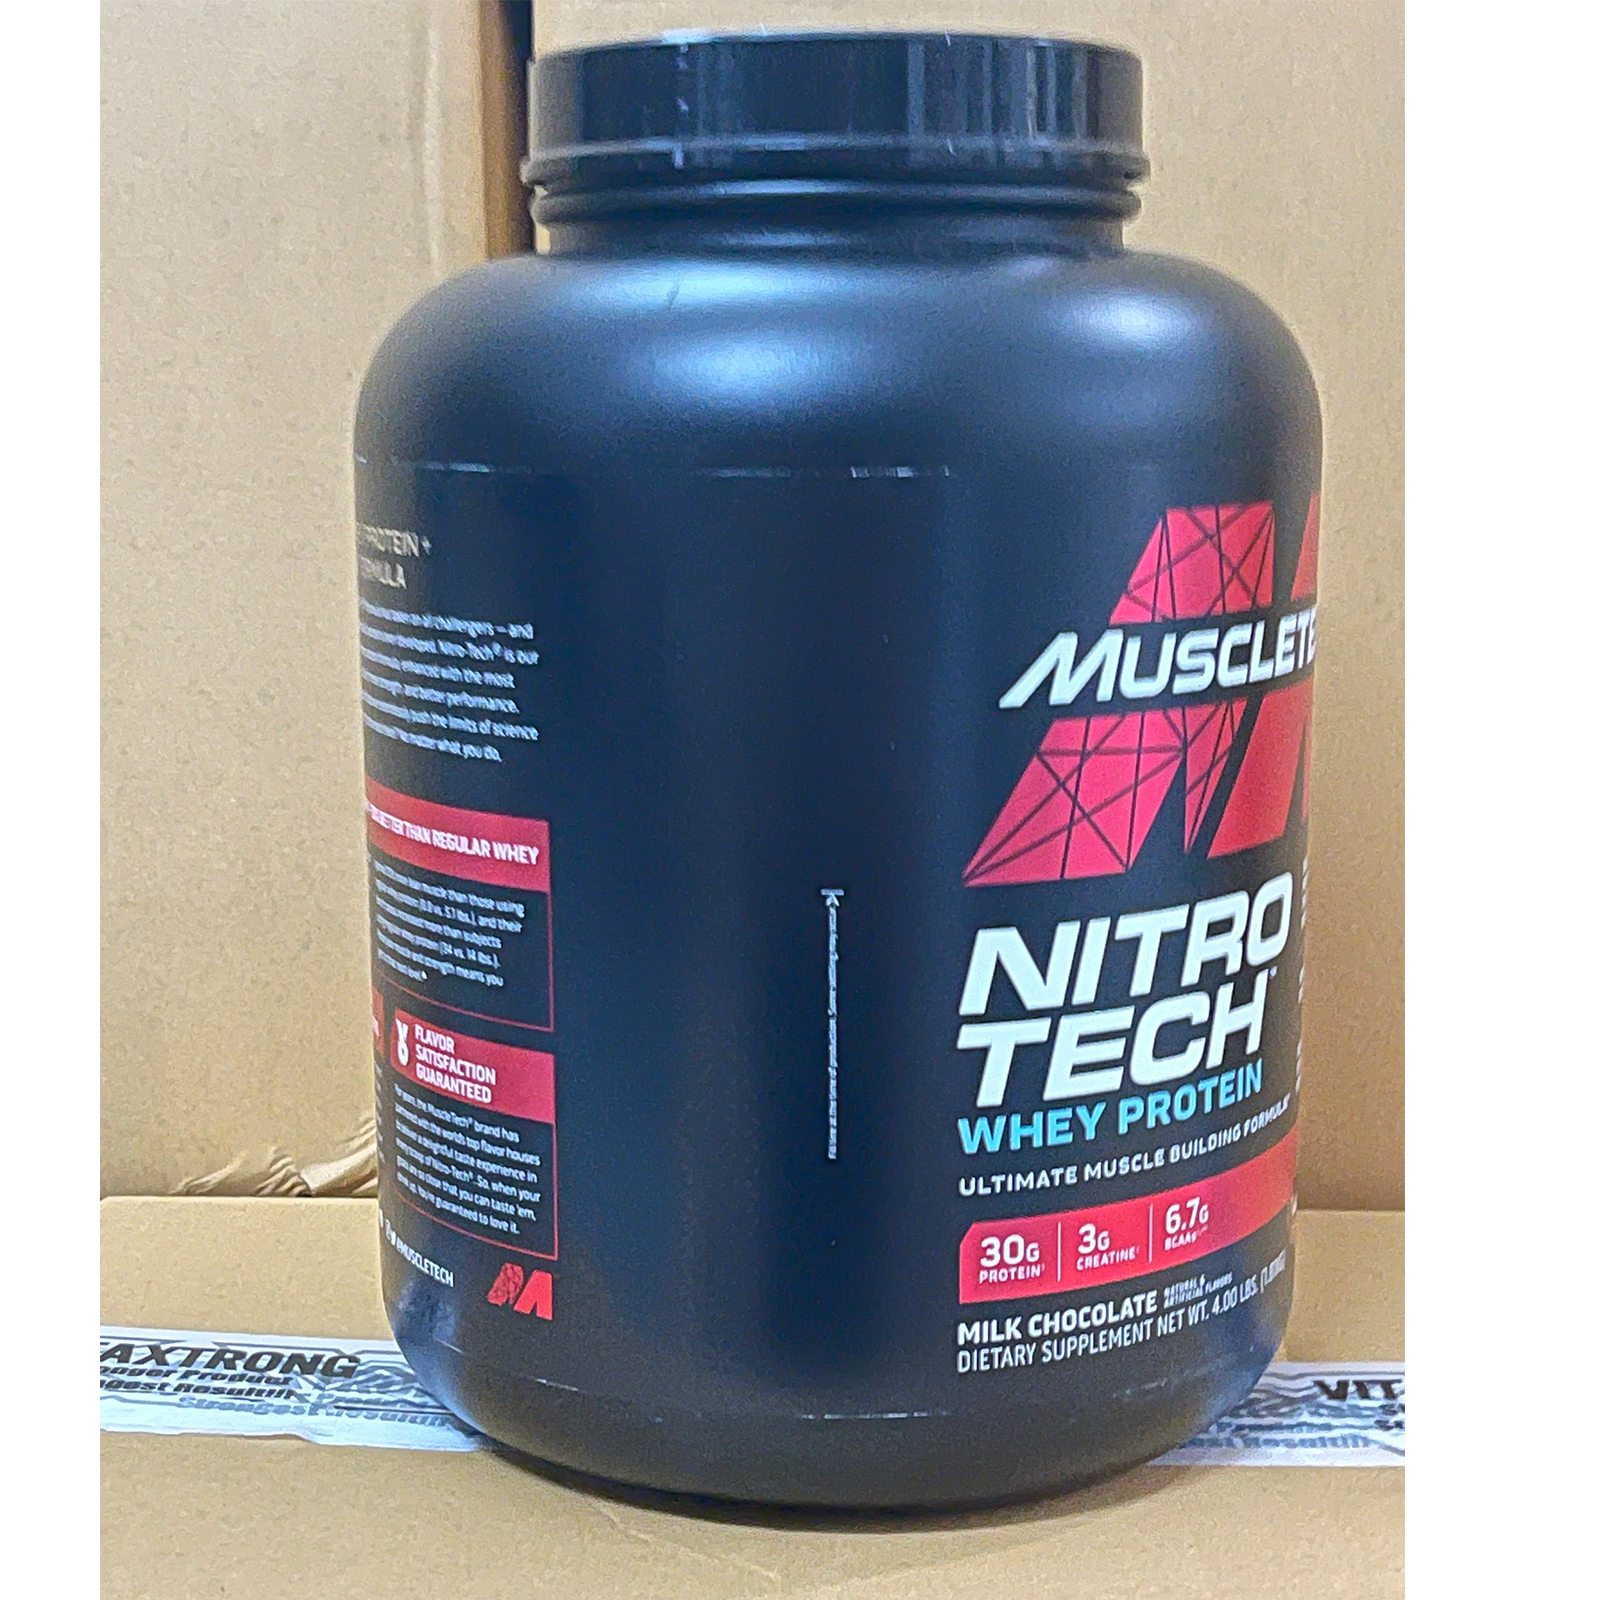 Hcmtặng bình và áo gym sữa tăng cơ cực mạnh whey protein nitro tech của - ảnh sản phẩm 5